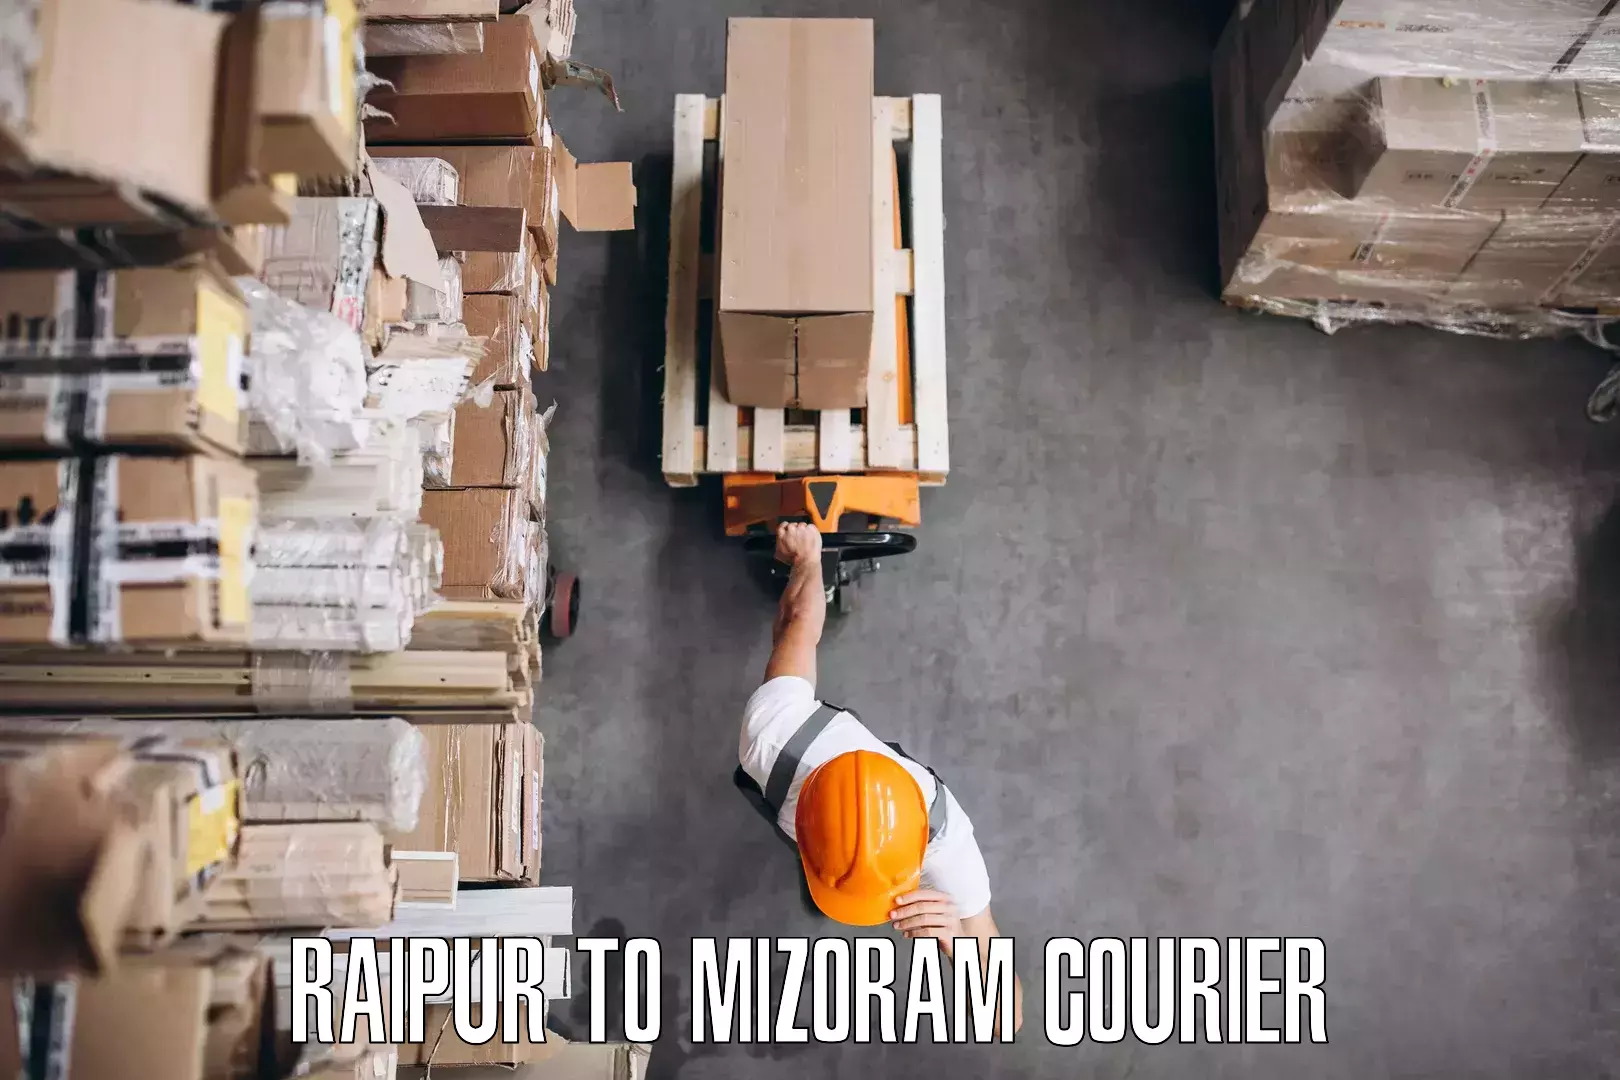 Quality moving company Raipur to Aizawl